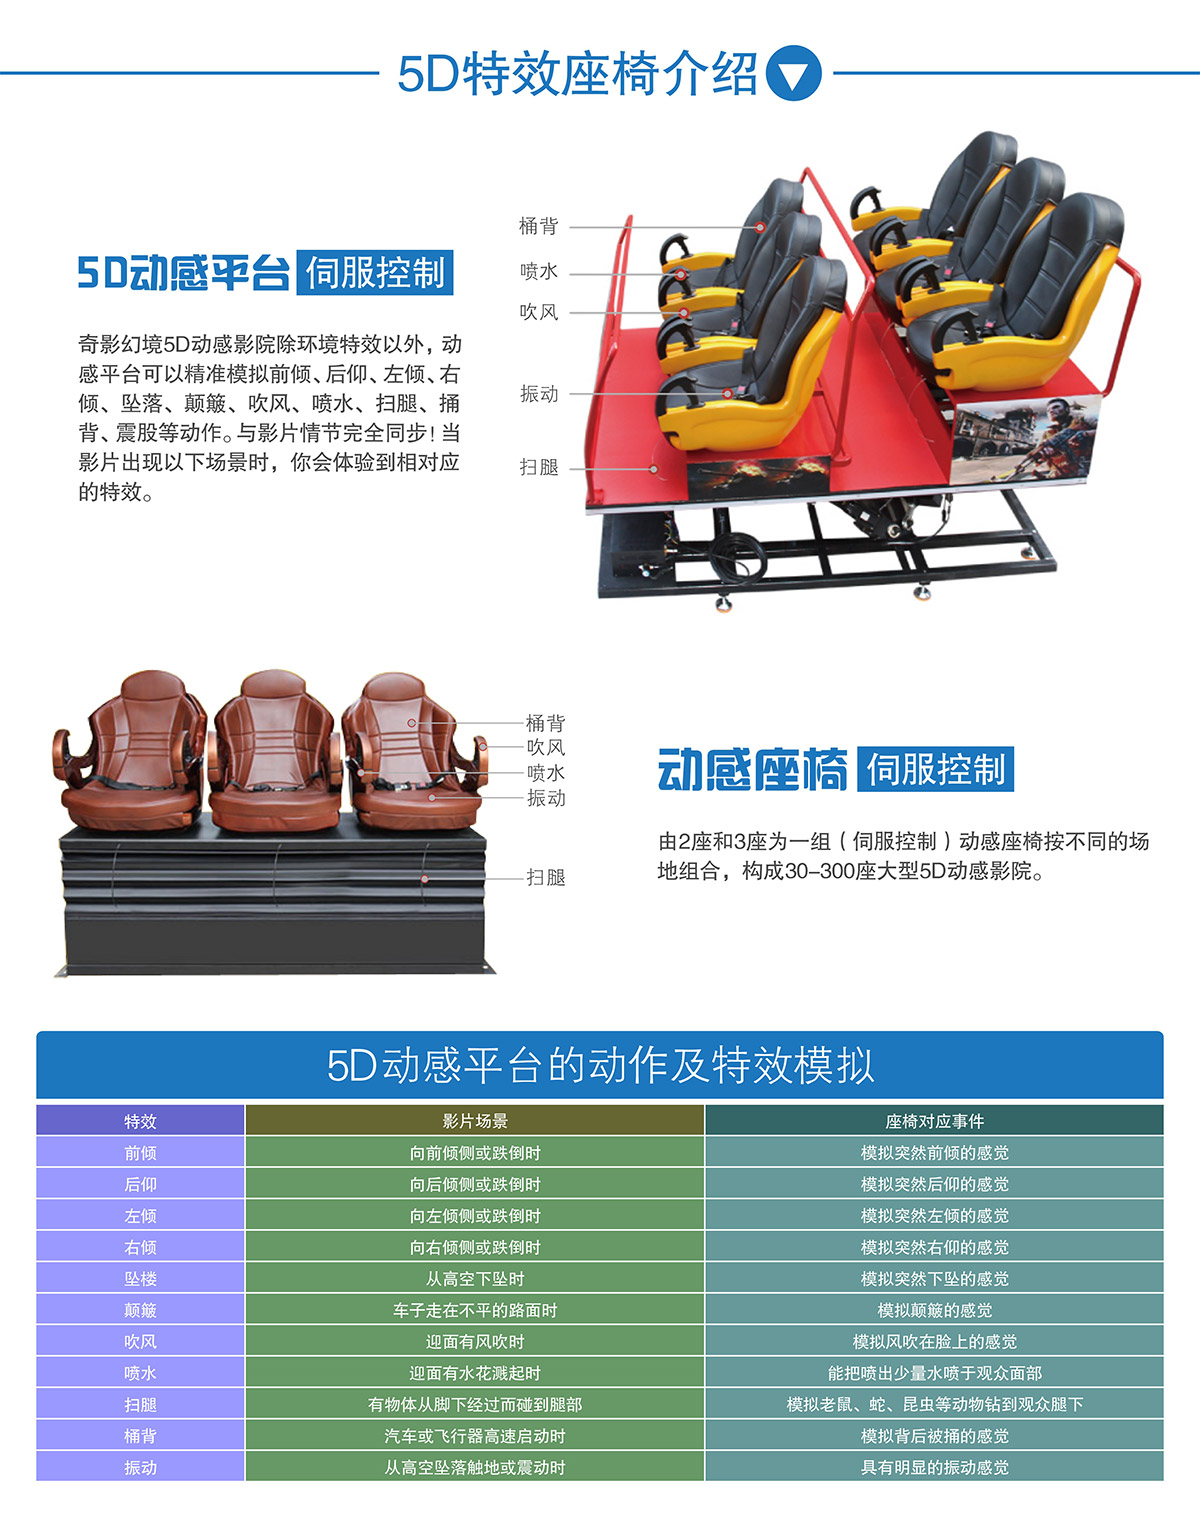 甘肃兰州奇影幻境中大型5D动感特效座椅介绍.jpg